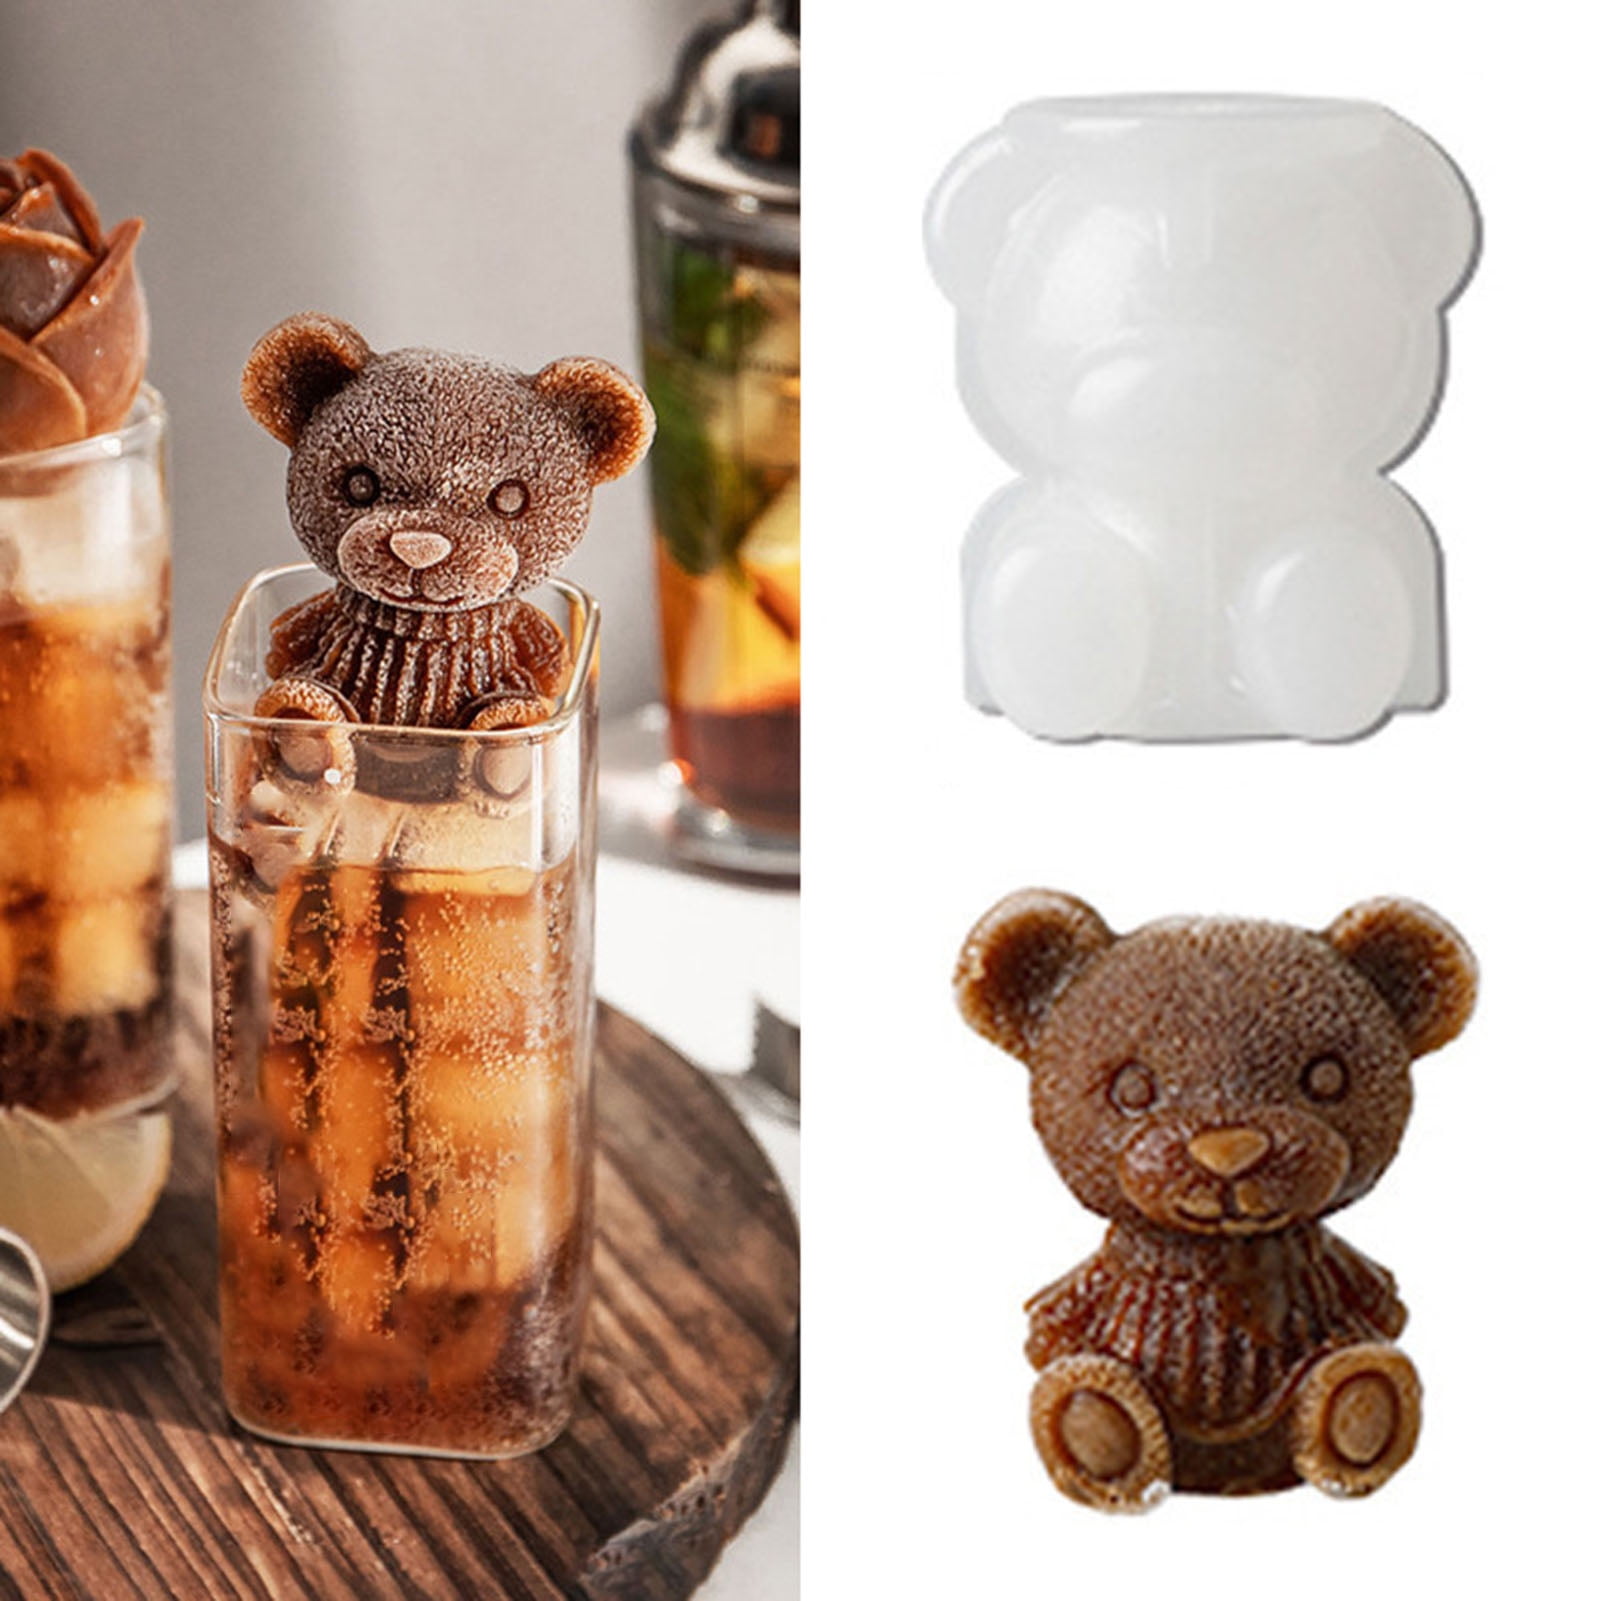 Agoniii ice bear,bear mold 3d, Teddy Bear mold Ice Cube,ice cube mold, 3d  silicone mold,bear mold,ice molds for coffee,Milk tea,candy 2 pcs